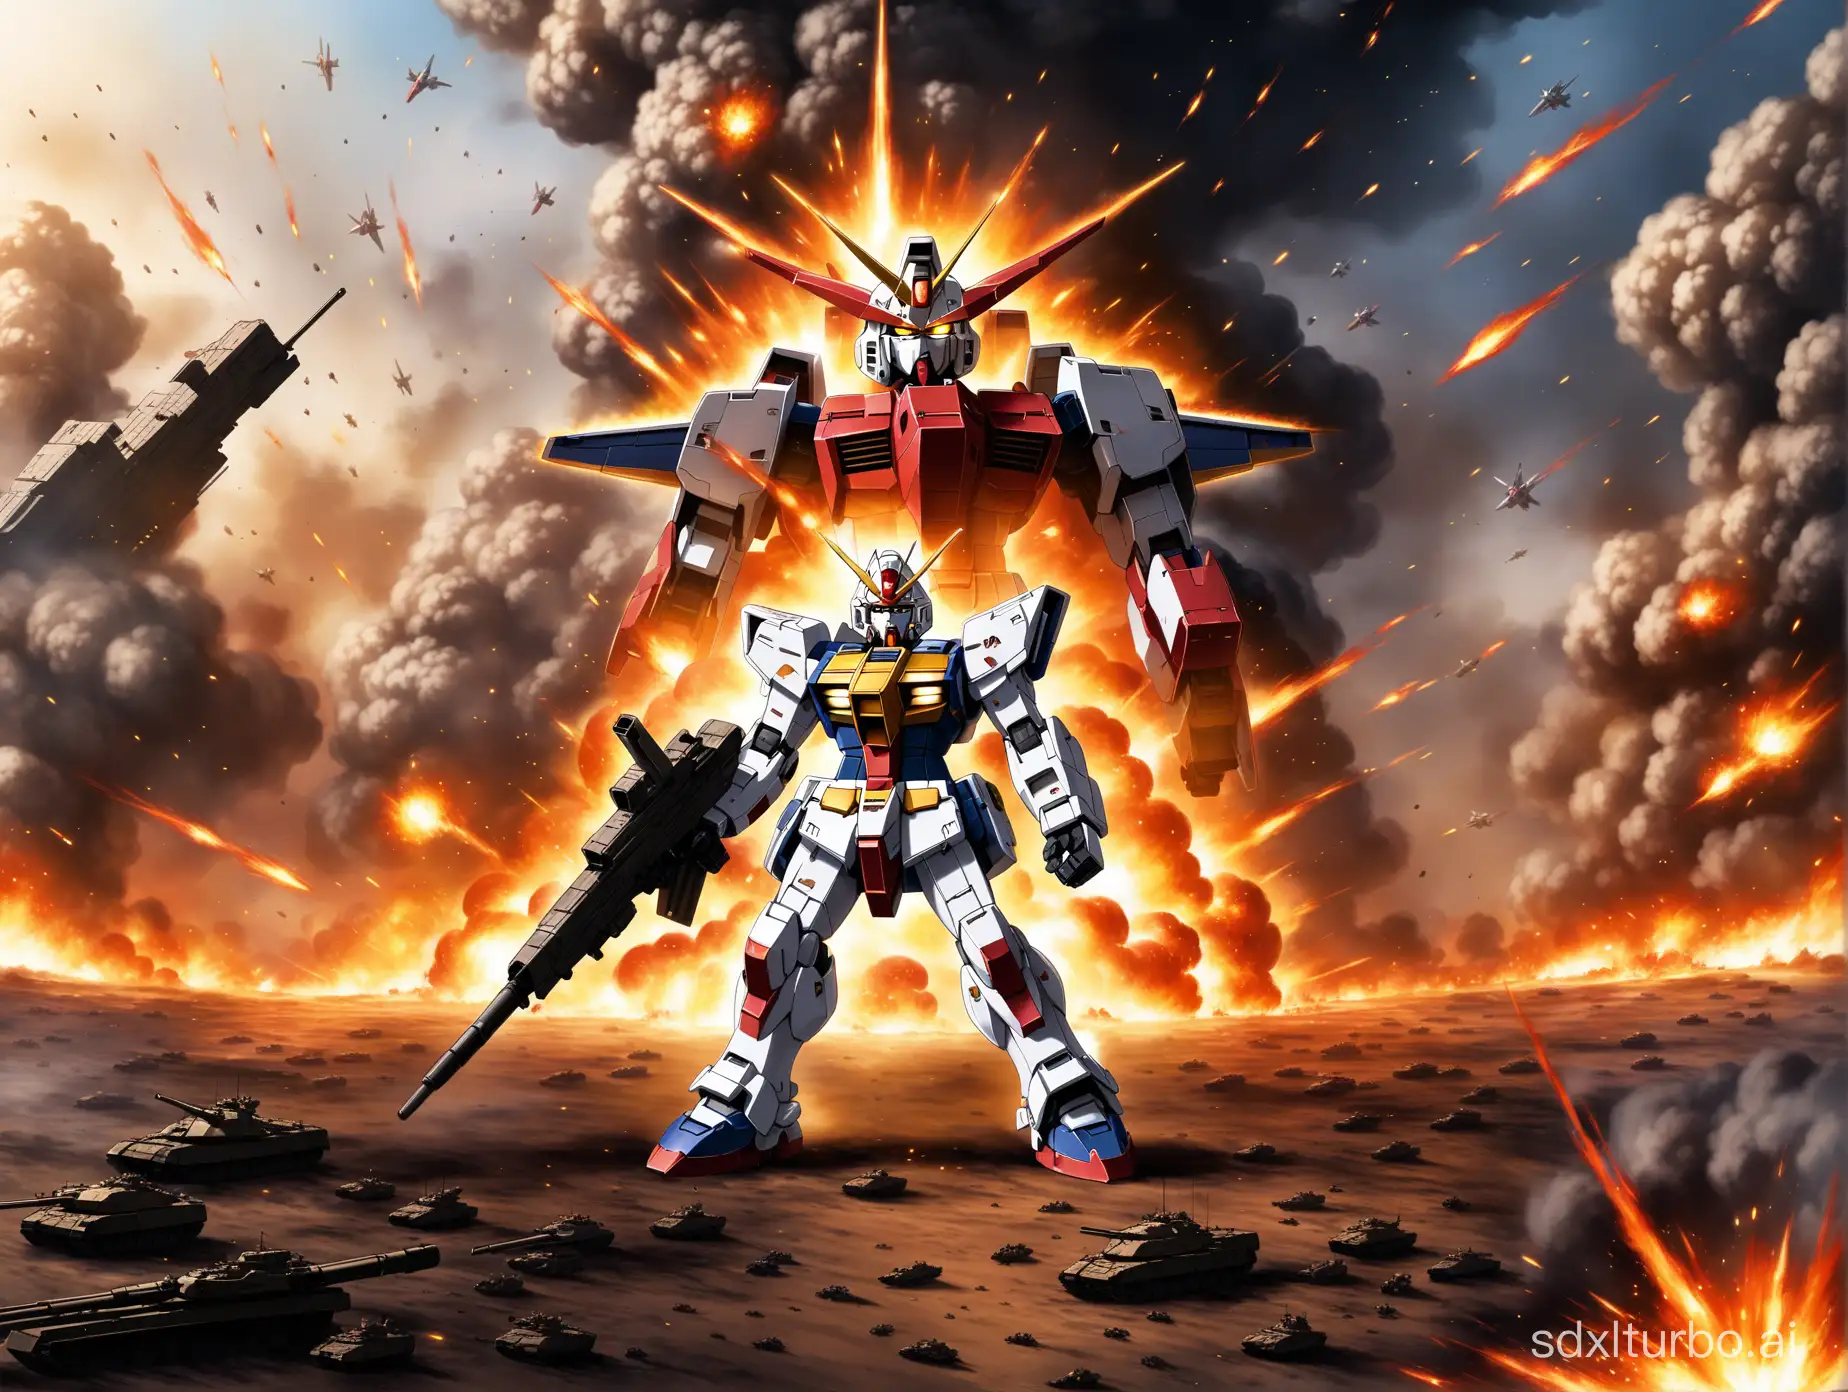 断臂的Gundam，跪倒在大地之上，身后是战火纷飞的战场，还有爆炸
